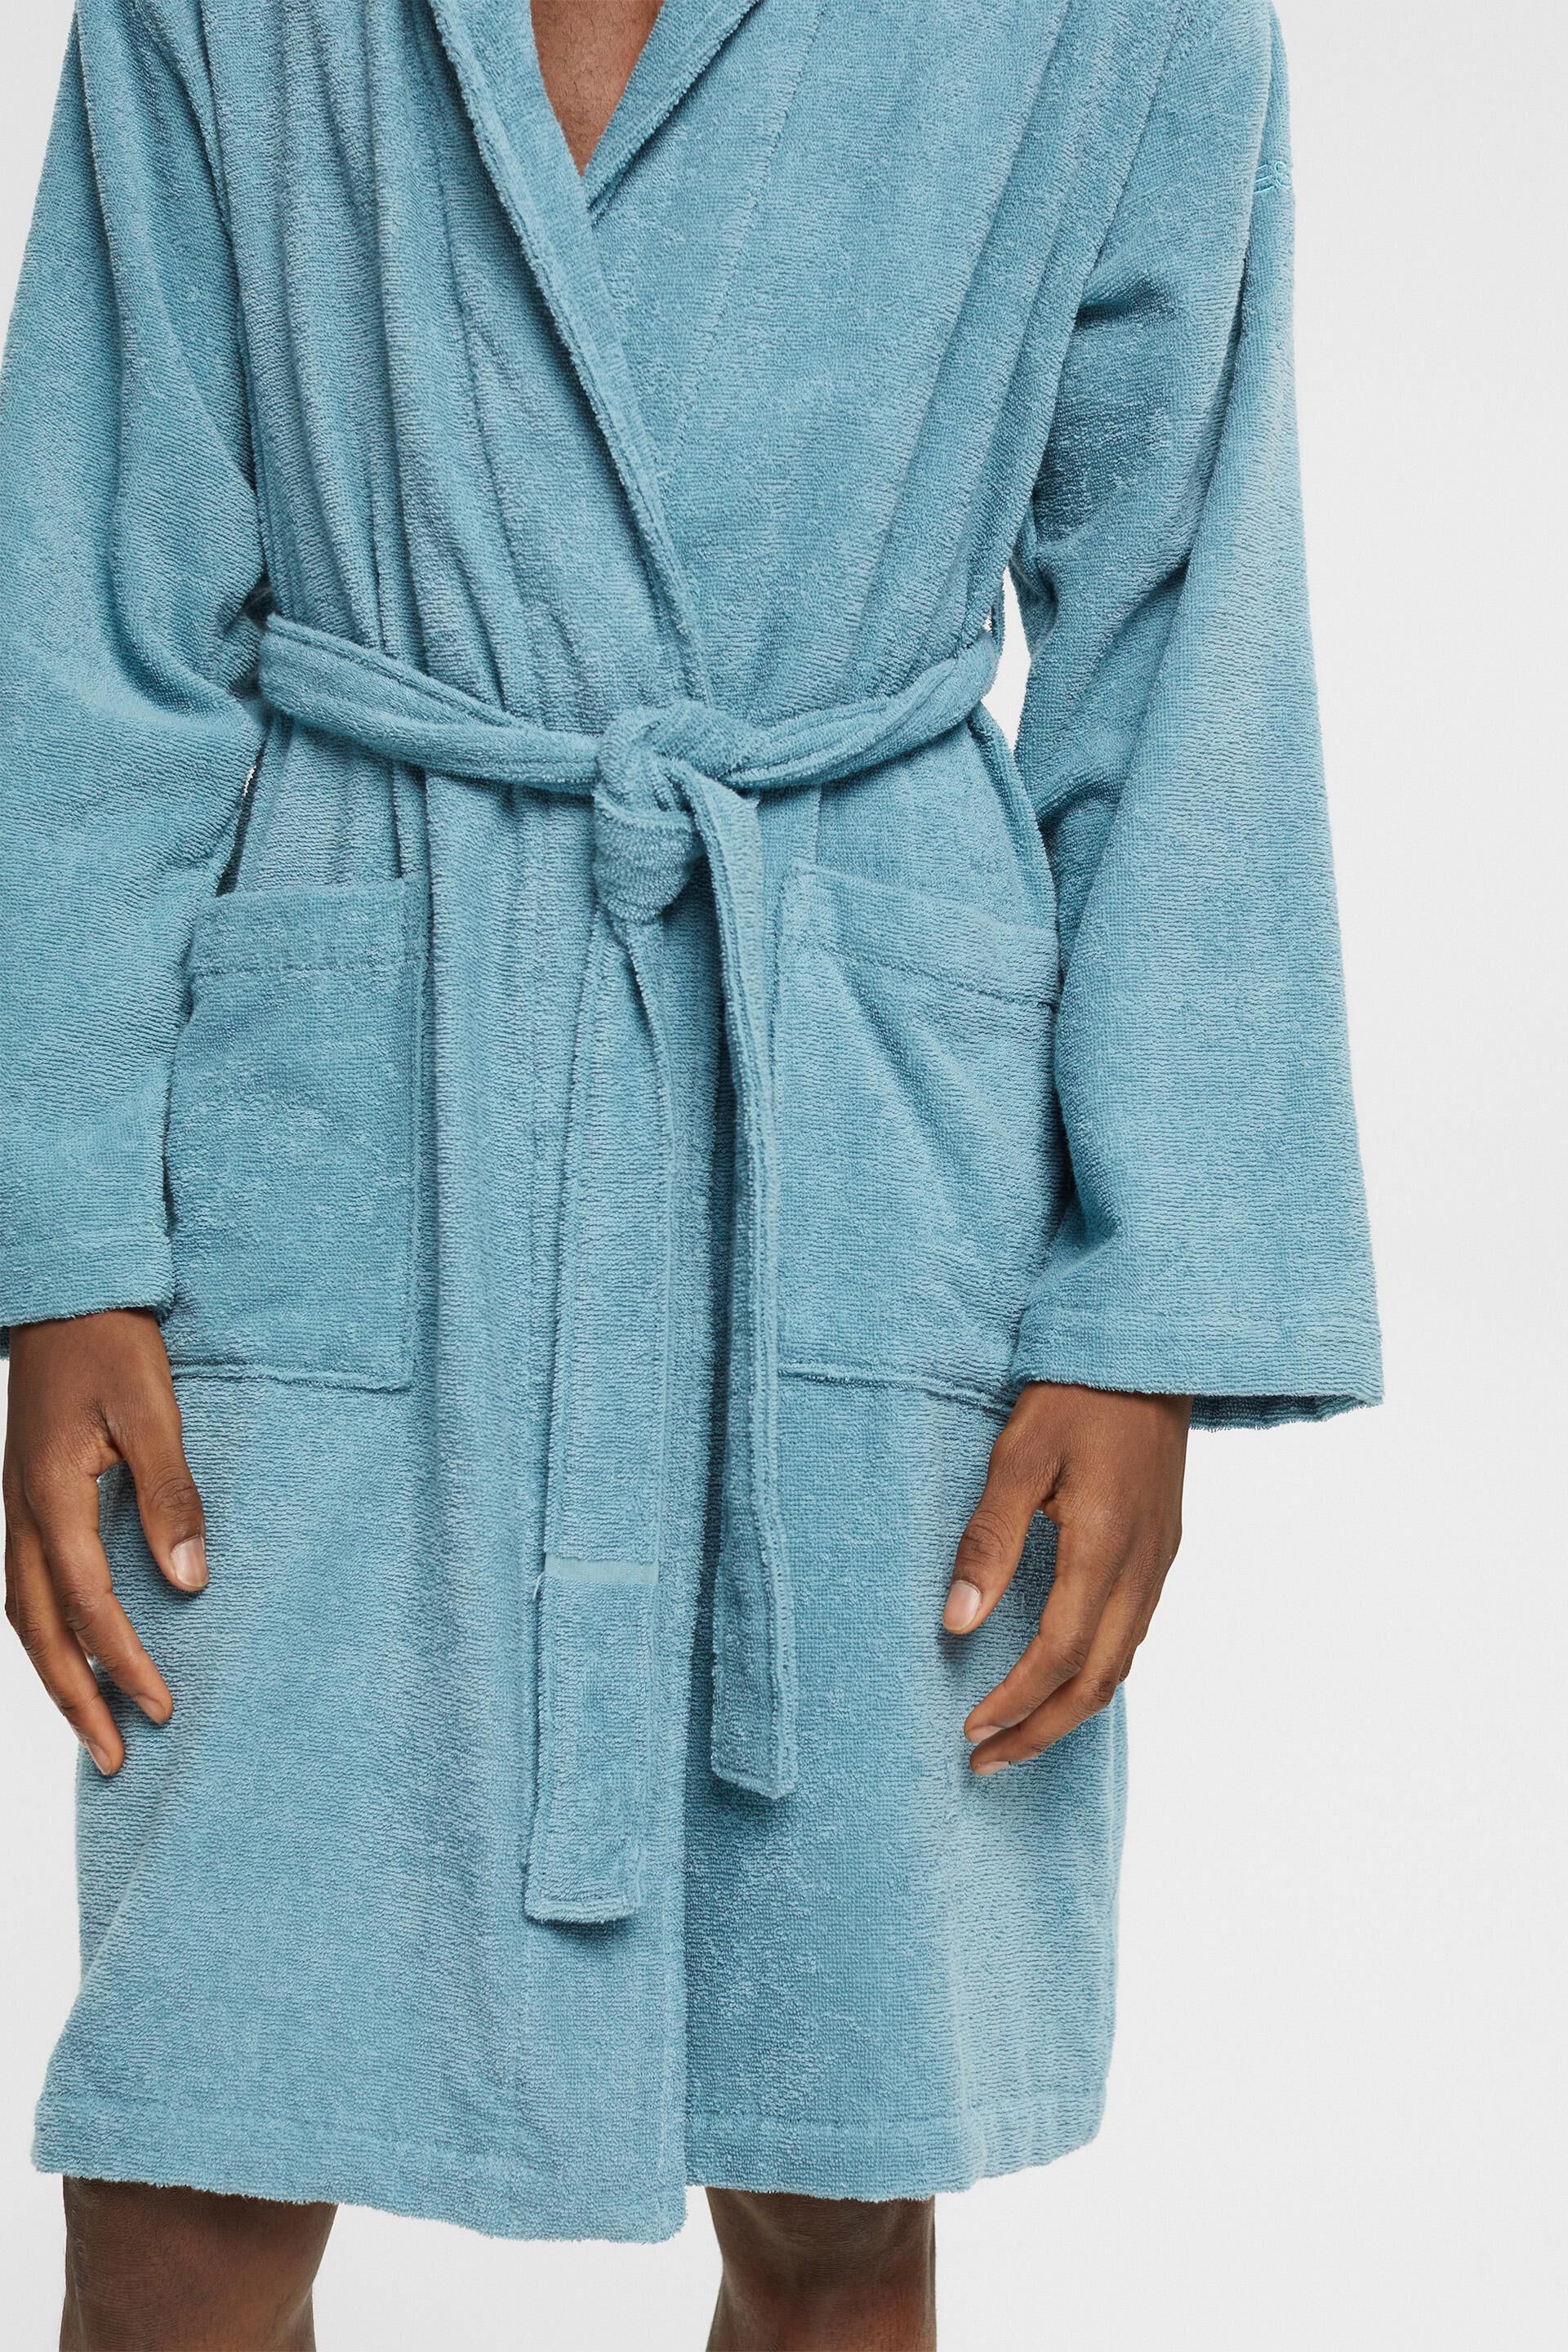 ESPRIT - Unisex bathrobe, 100% cotton at our online shop